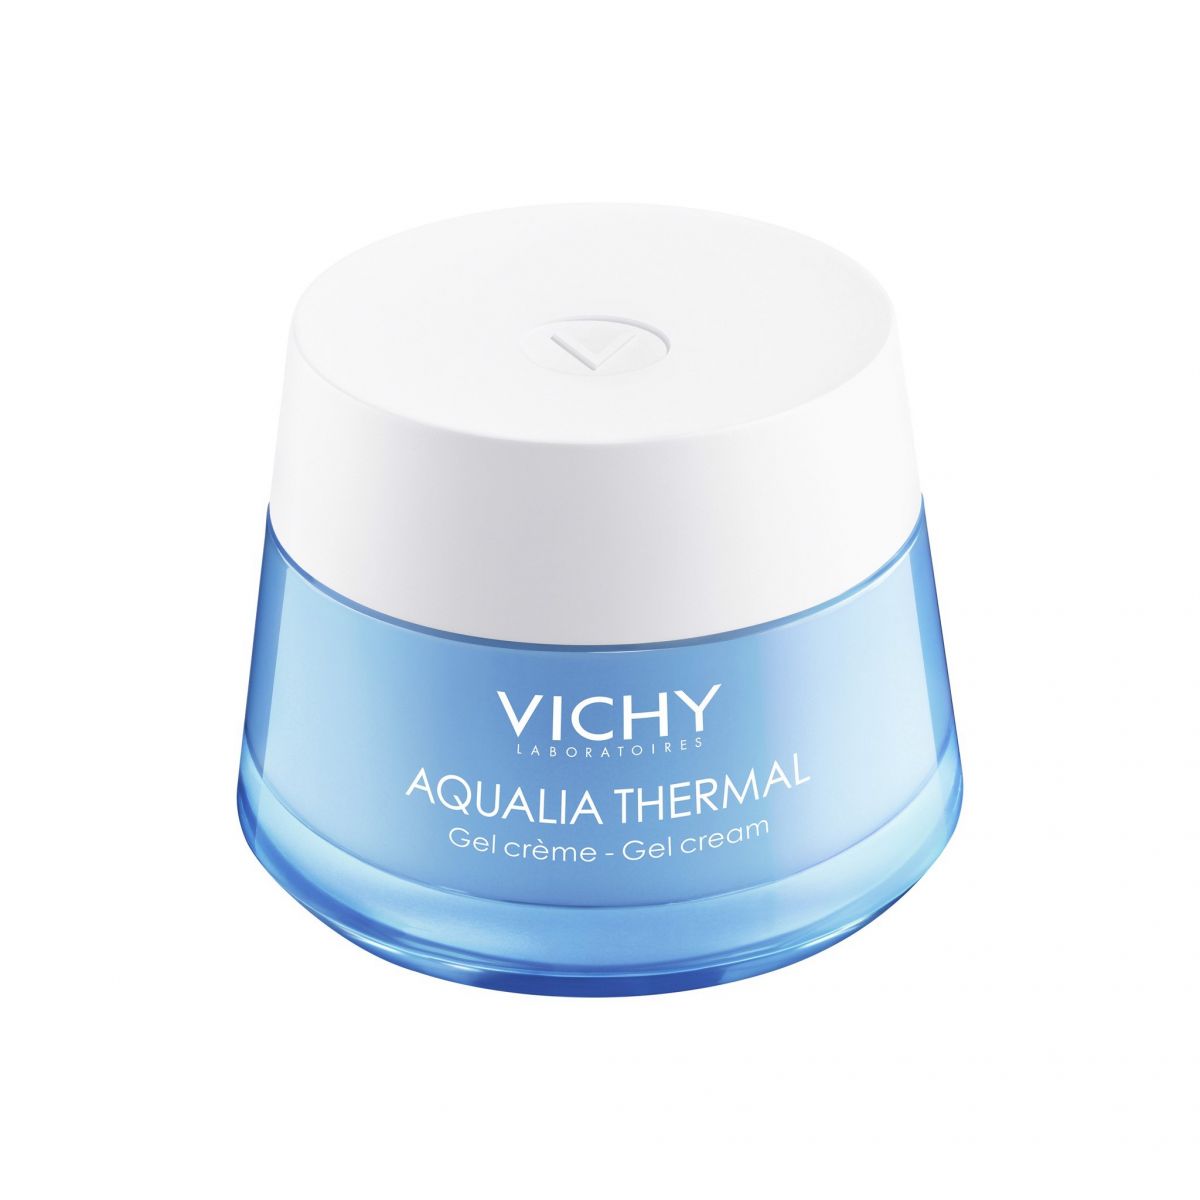 Kem dưỡng ẩm Vichy Aqualia Thermal cấp nước cho da hỗn hợp